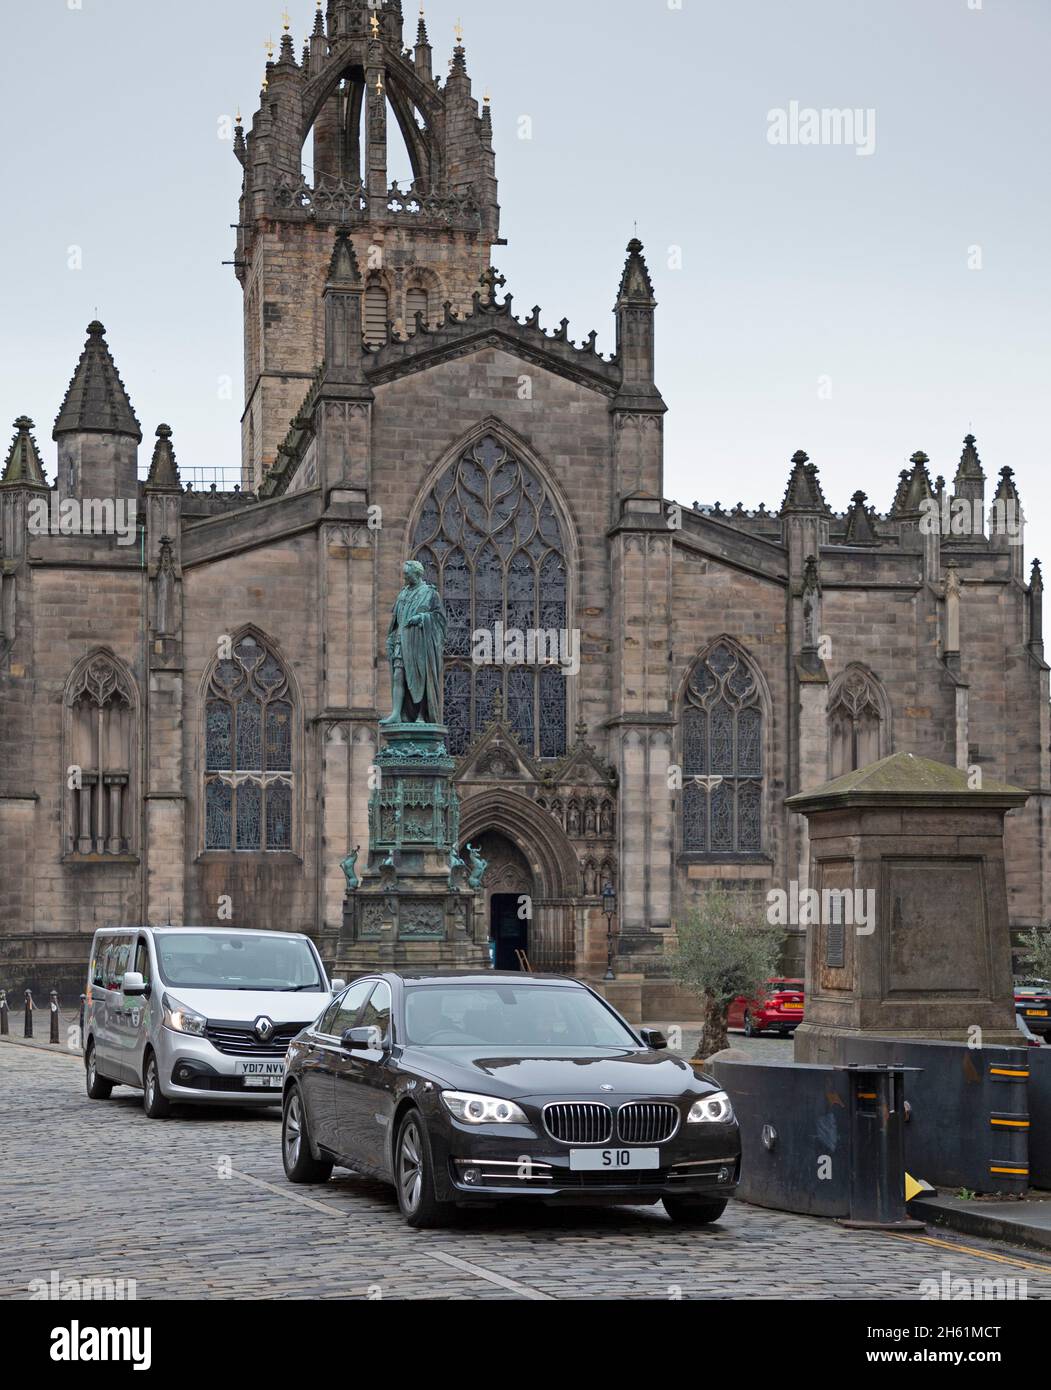 Édimbourg, Écosse, Royaume-Uni.12 novembre 2021.Lord Provost du grand véhicule BMW d'Édimbourg dans le centre-ville, Credit: Arch White/Alay Live News. Banque D'Images